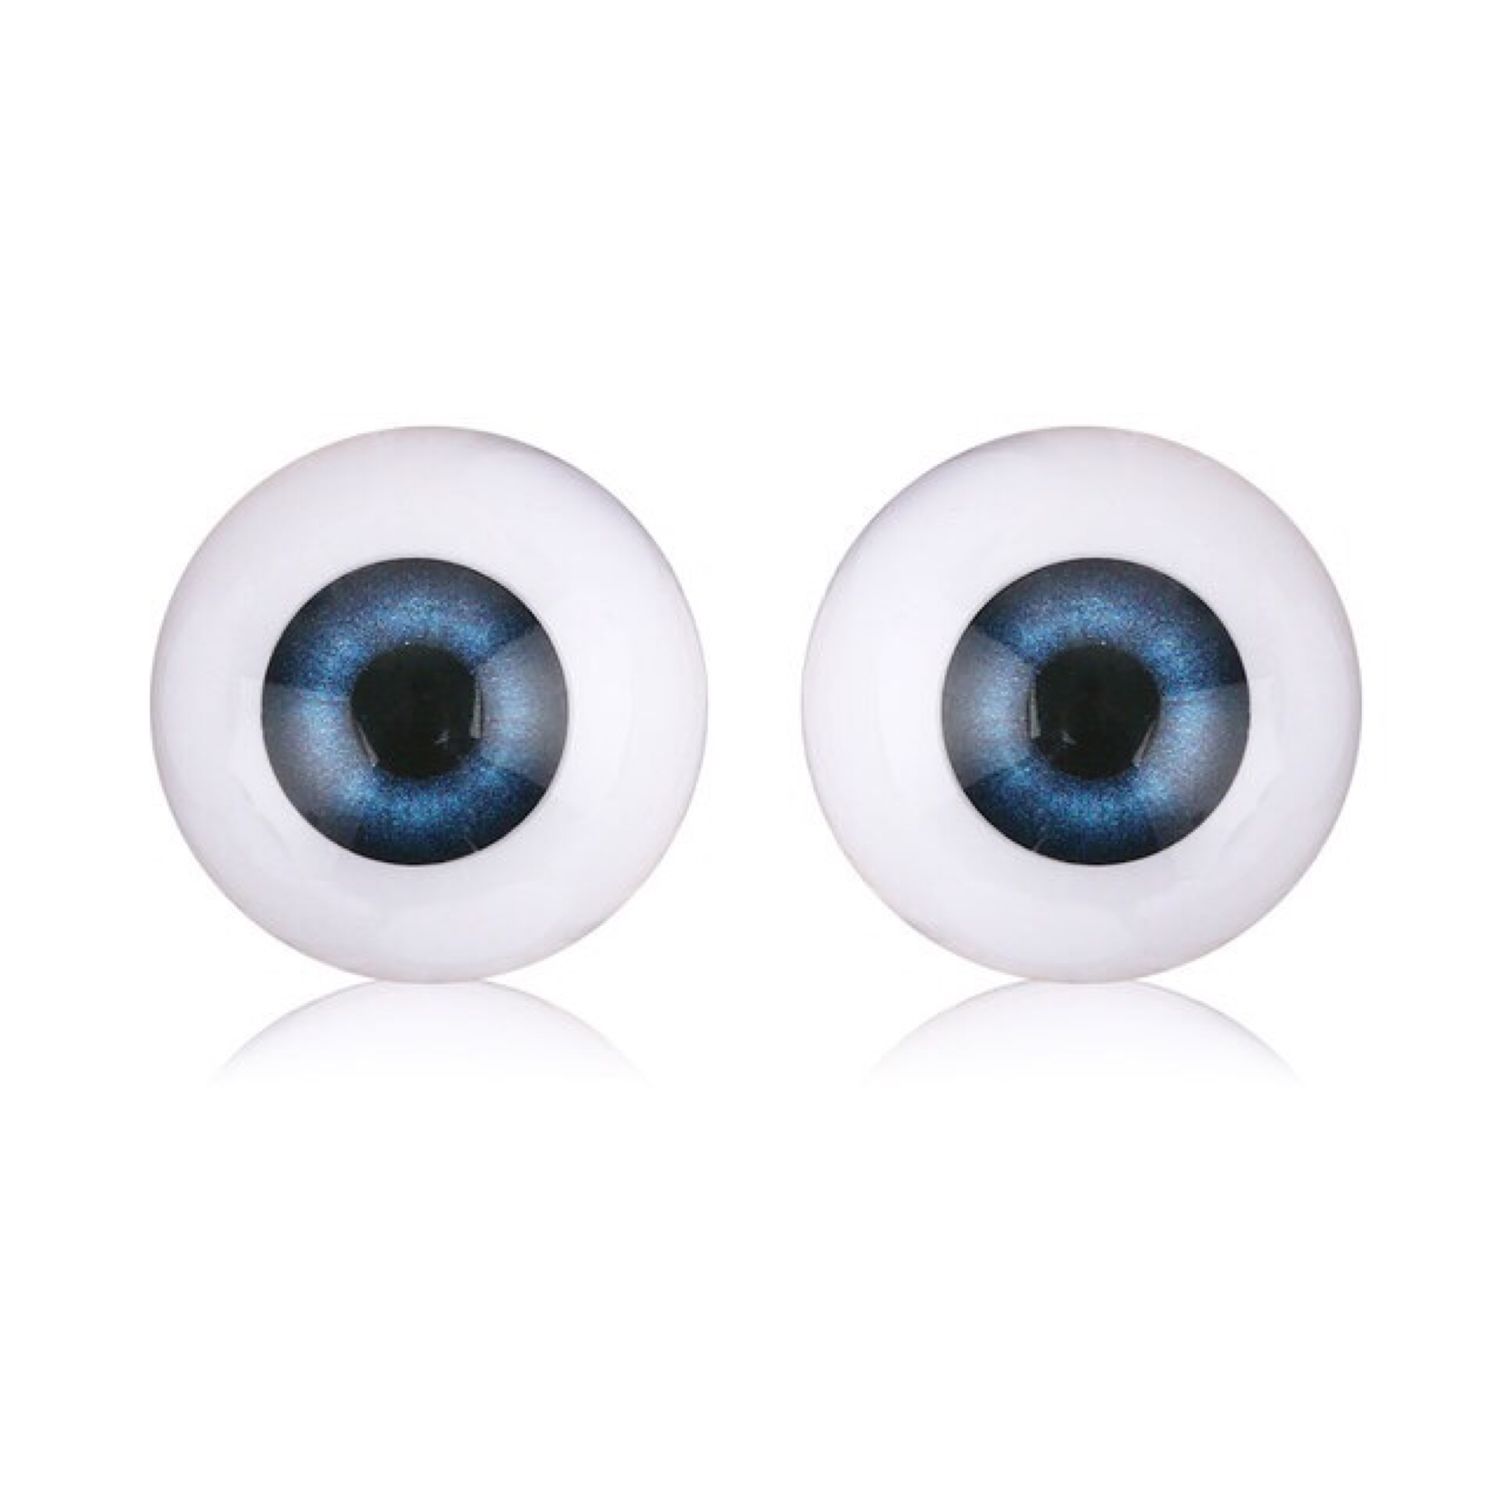 Глазок 24. Пластиковые глаза. Полые глаза. Как называется полукруг для кукольных глаз.